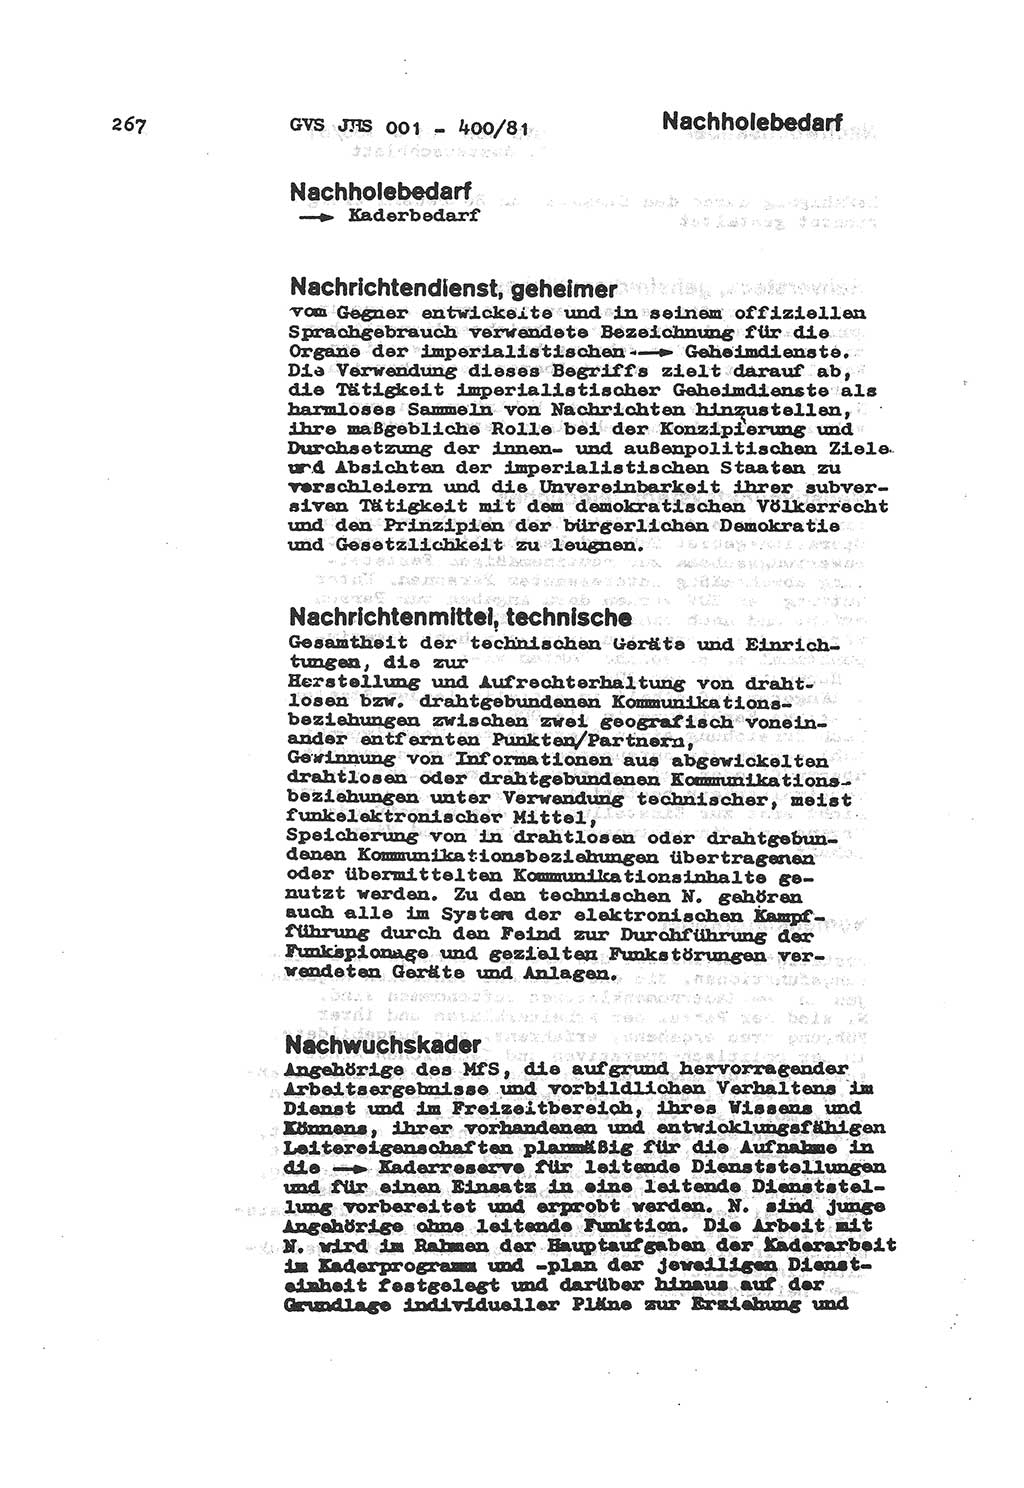 Wörterbuch der politisch-operativen Arbeit, Ministerium für Staatssicherheit (MfS) [Deutsche Demokratische Republik (DDR)], Juristische Hochschule (JHS), Geheime Verschlußsache (GVS) o001-400/81, Potsdam 1985, Blatt 267 (Wb. pol.-op. Arb. MfS DDR JHS GVS o001-400/81 1985, Bl. 267)